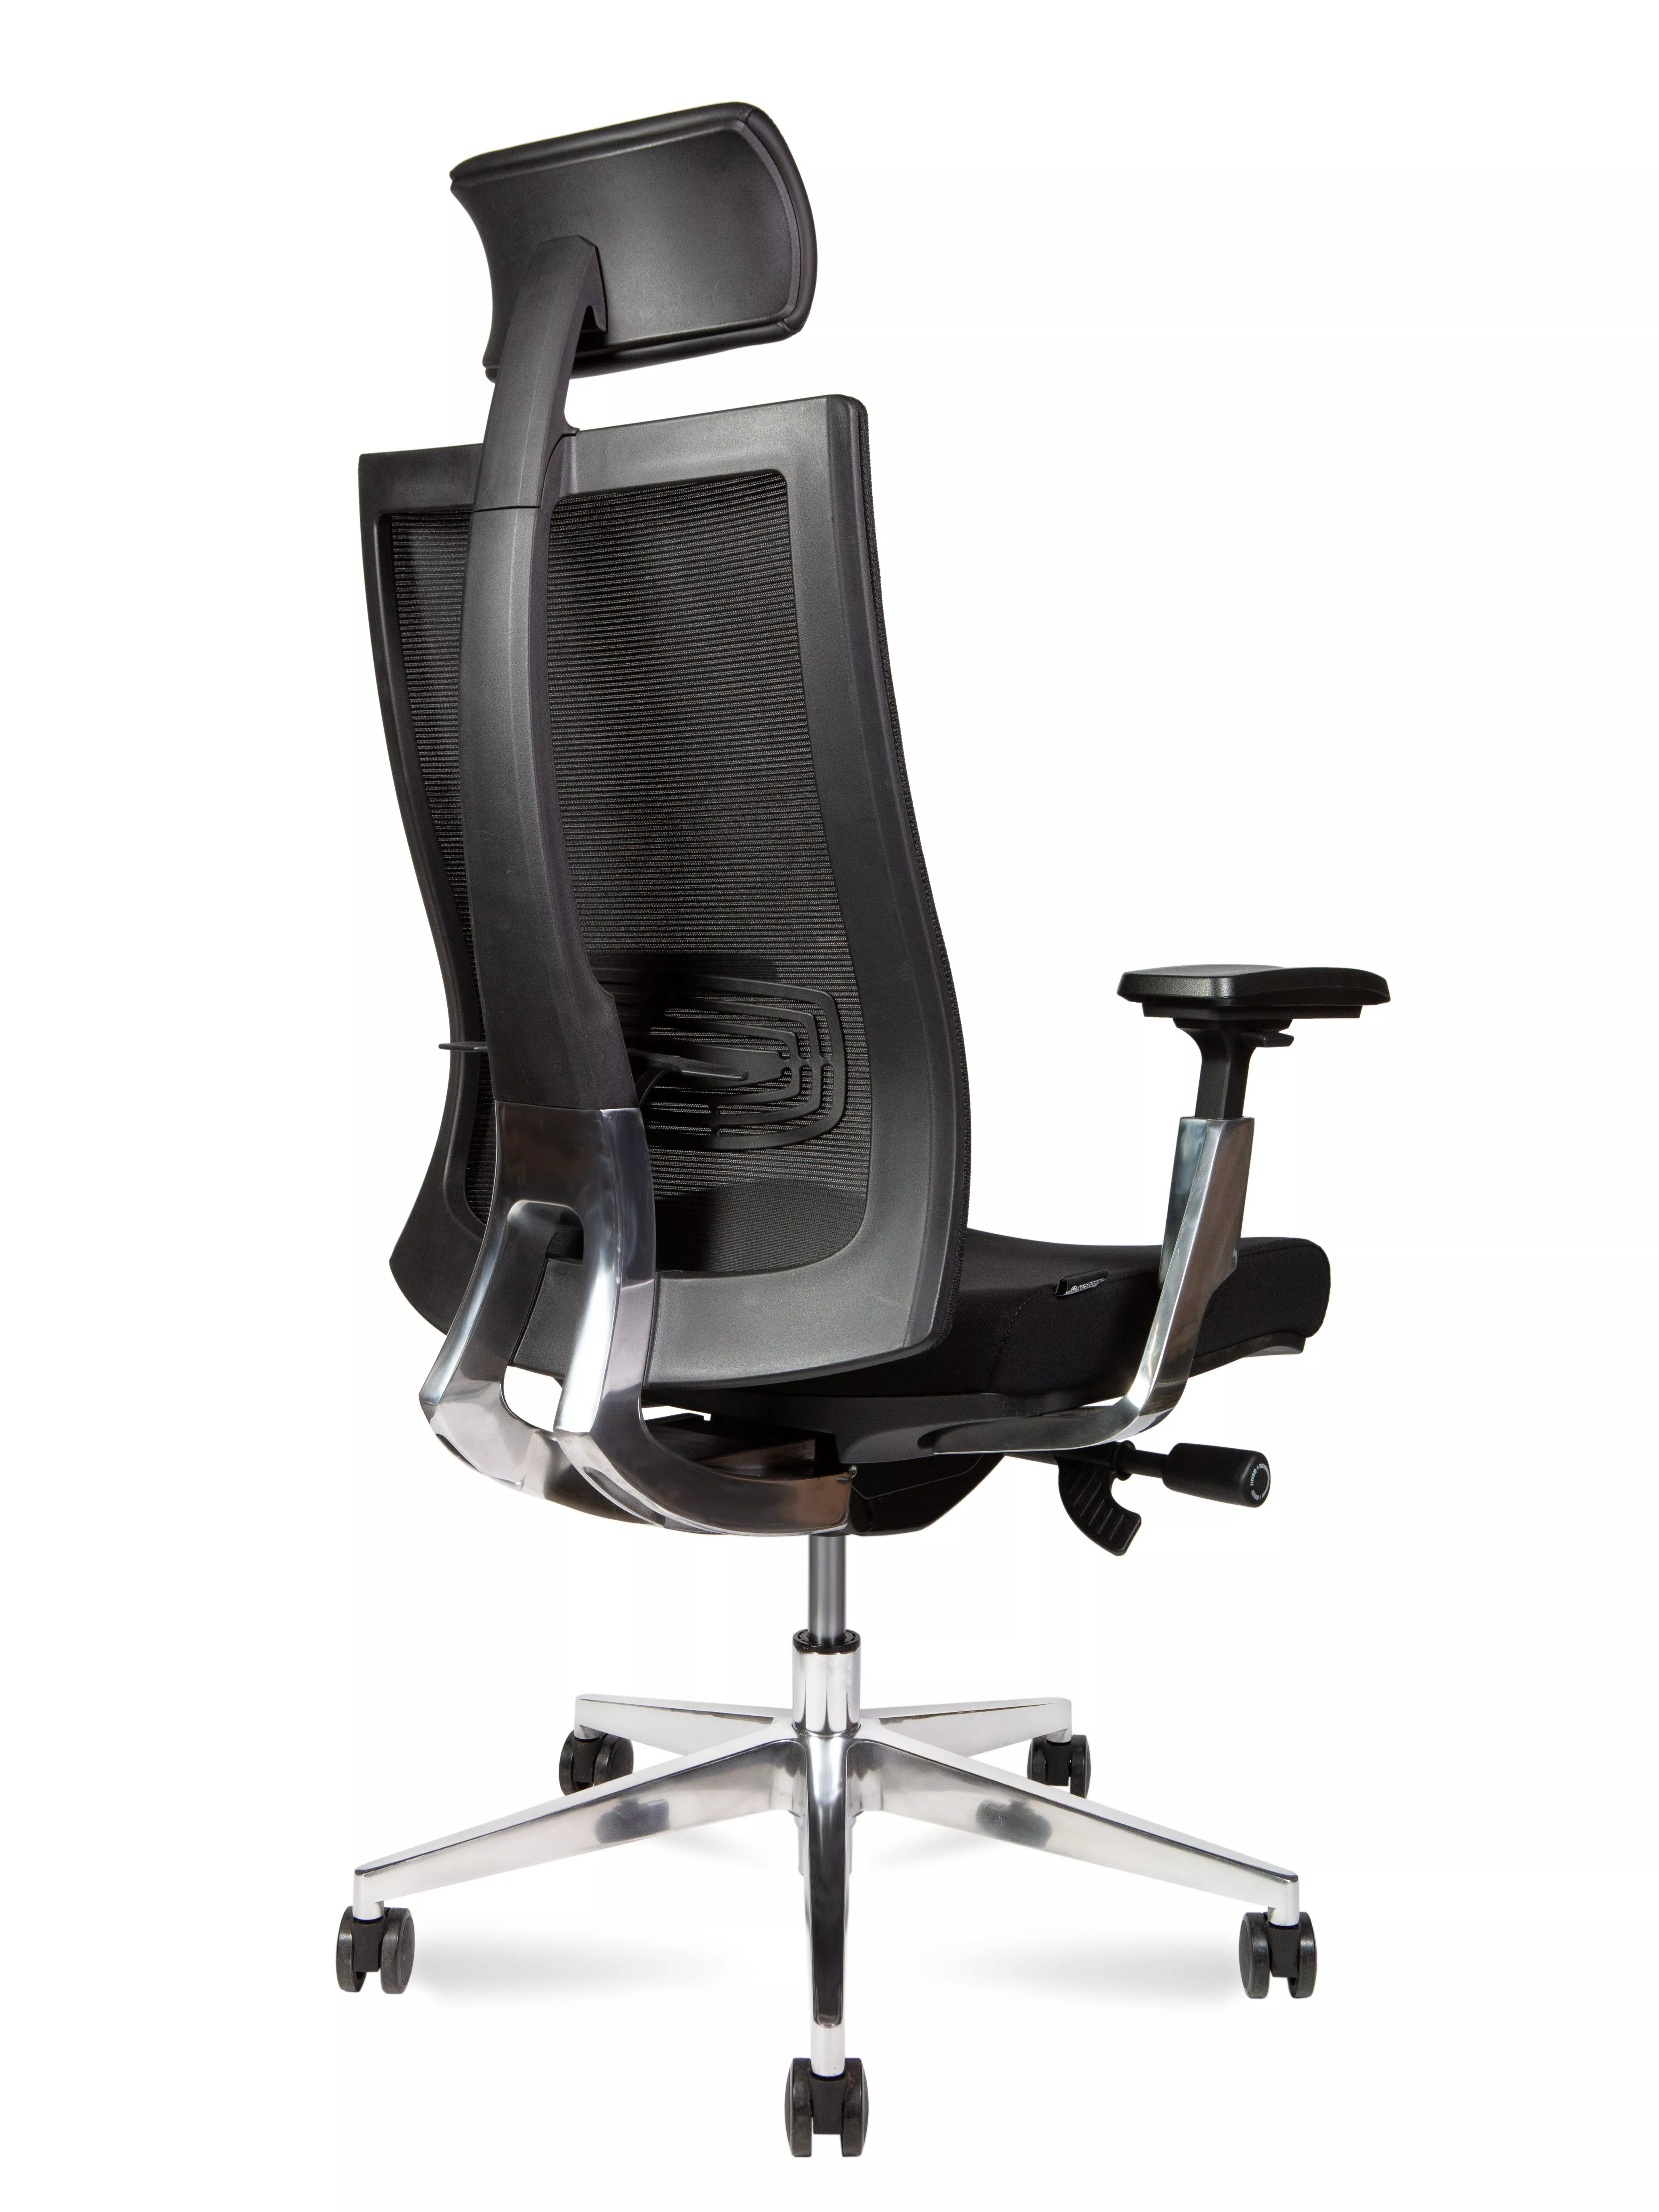 Эргономичное кресло с подголовником  NORDEN Vogue aluminium CH-203A-B-BB